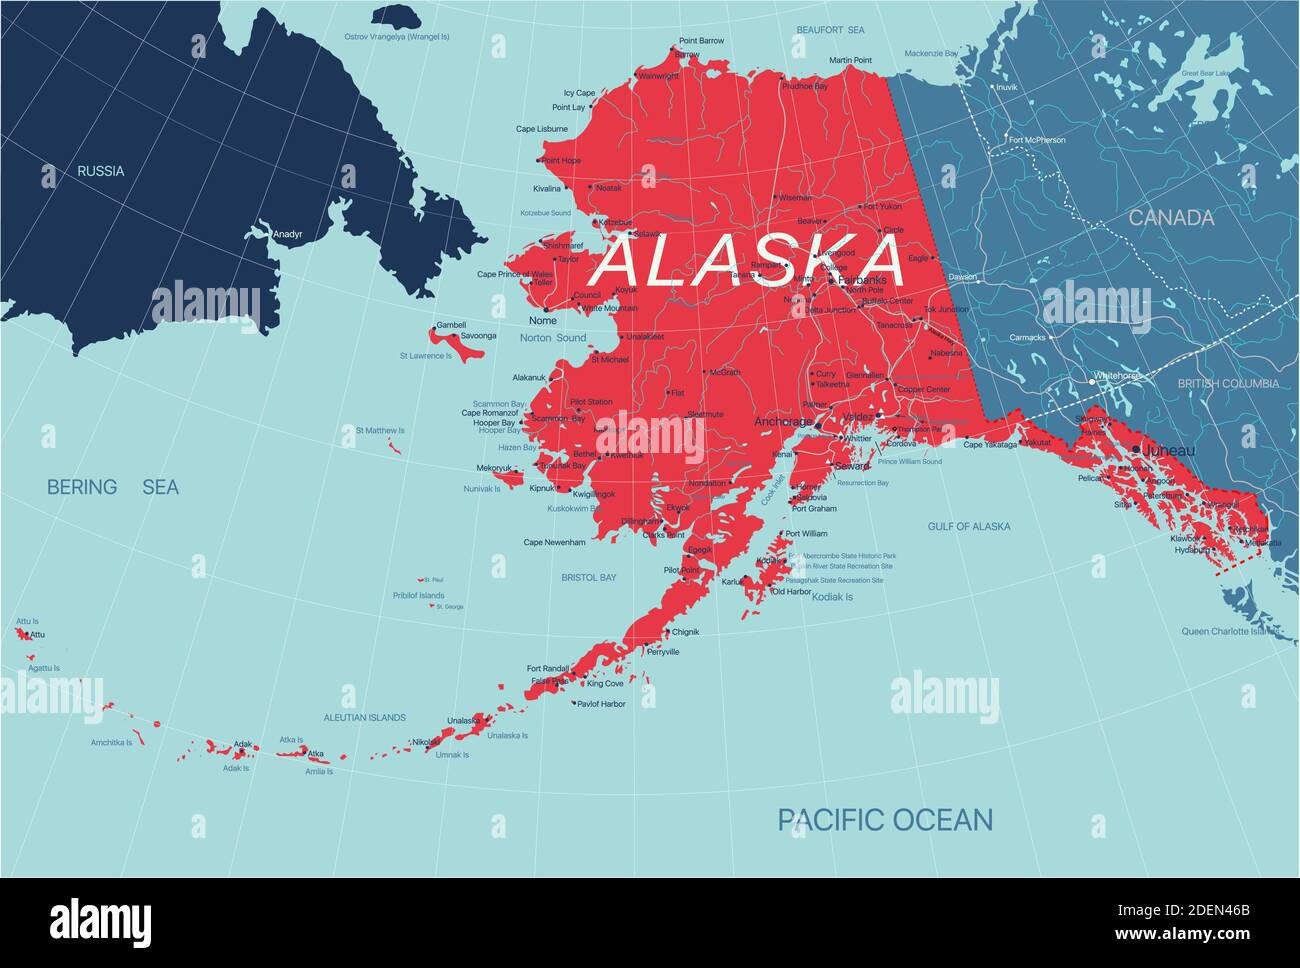 Alaska Stato mappa politica degli Stati Uniti con capitale Juneau, frontiere nazionali, città e città, fiumi e laghi. File vettoriale EPS-10, trend Illustrazione Vettoriale